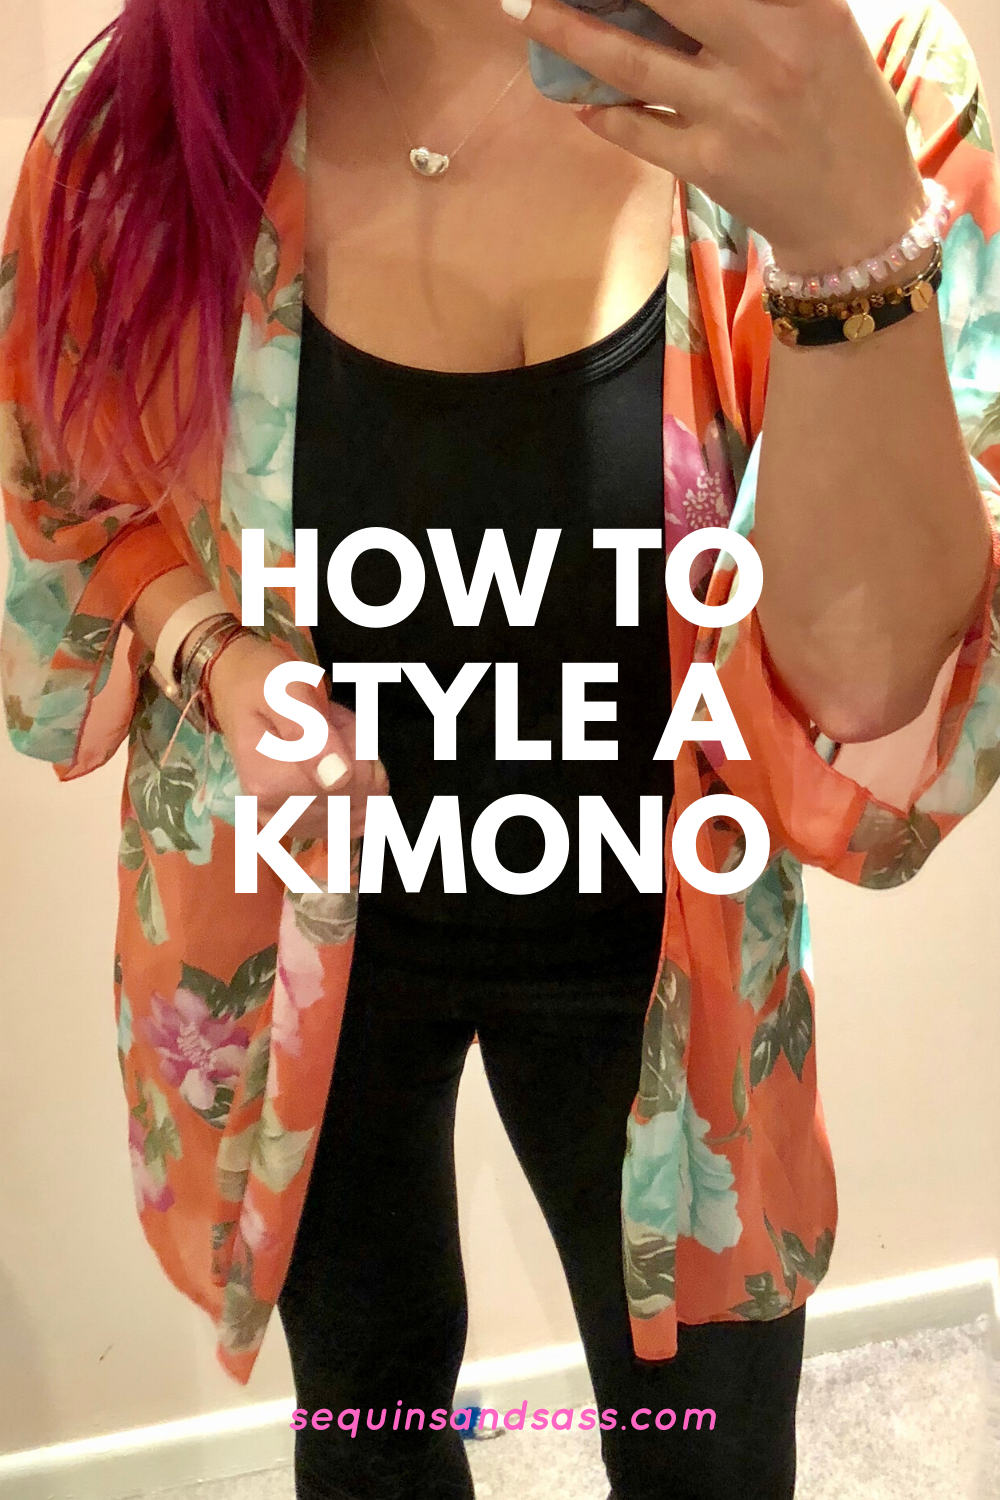 How to Style a Kimono